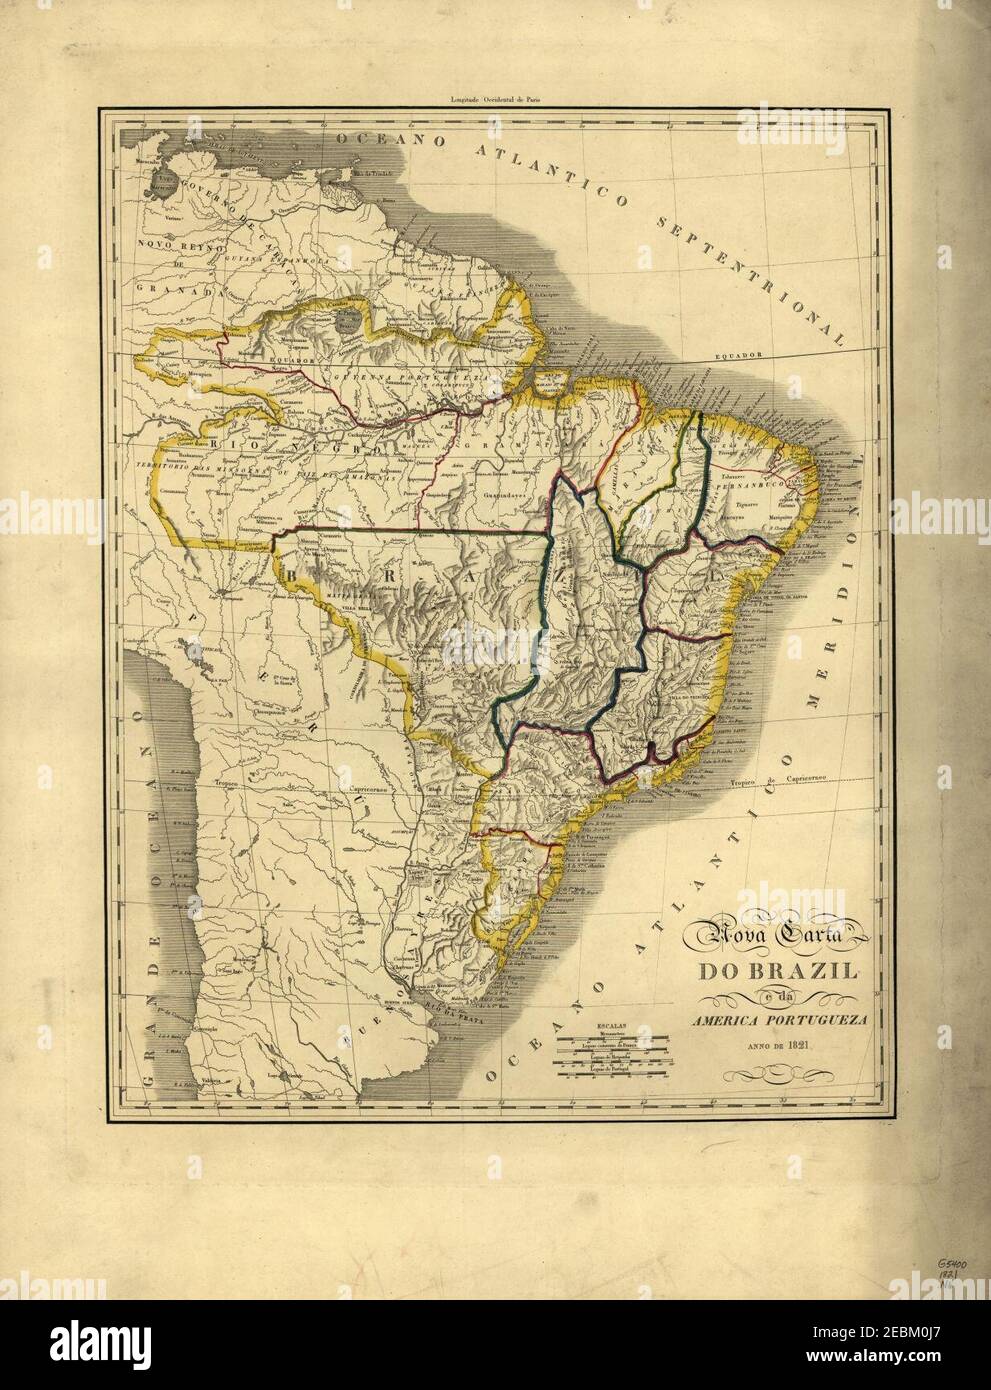 Nova carta do Brazil e da America portugueza, anno de 1821. Stock Photo